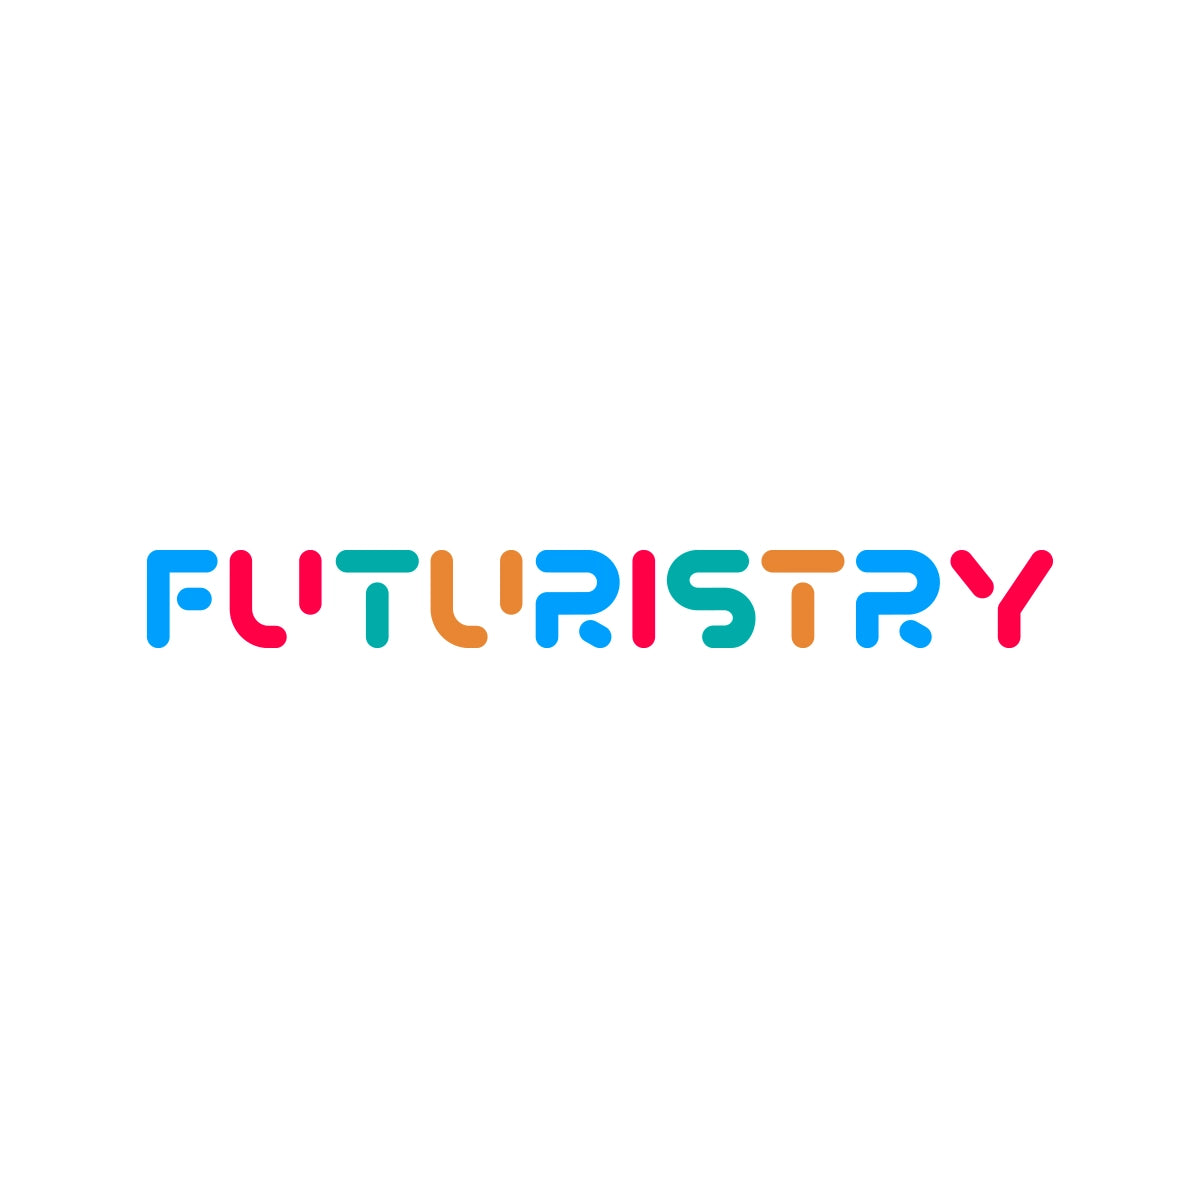 FUTURISTRY.COM